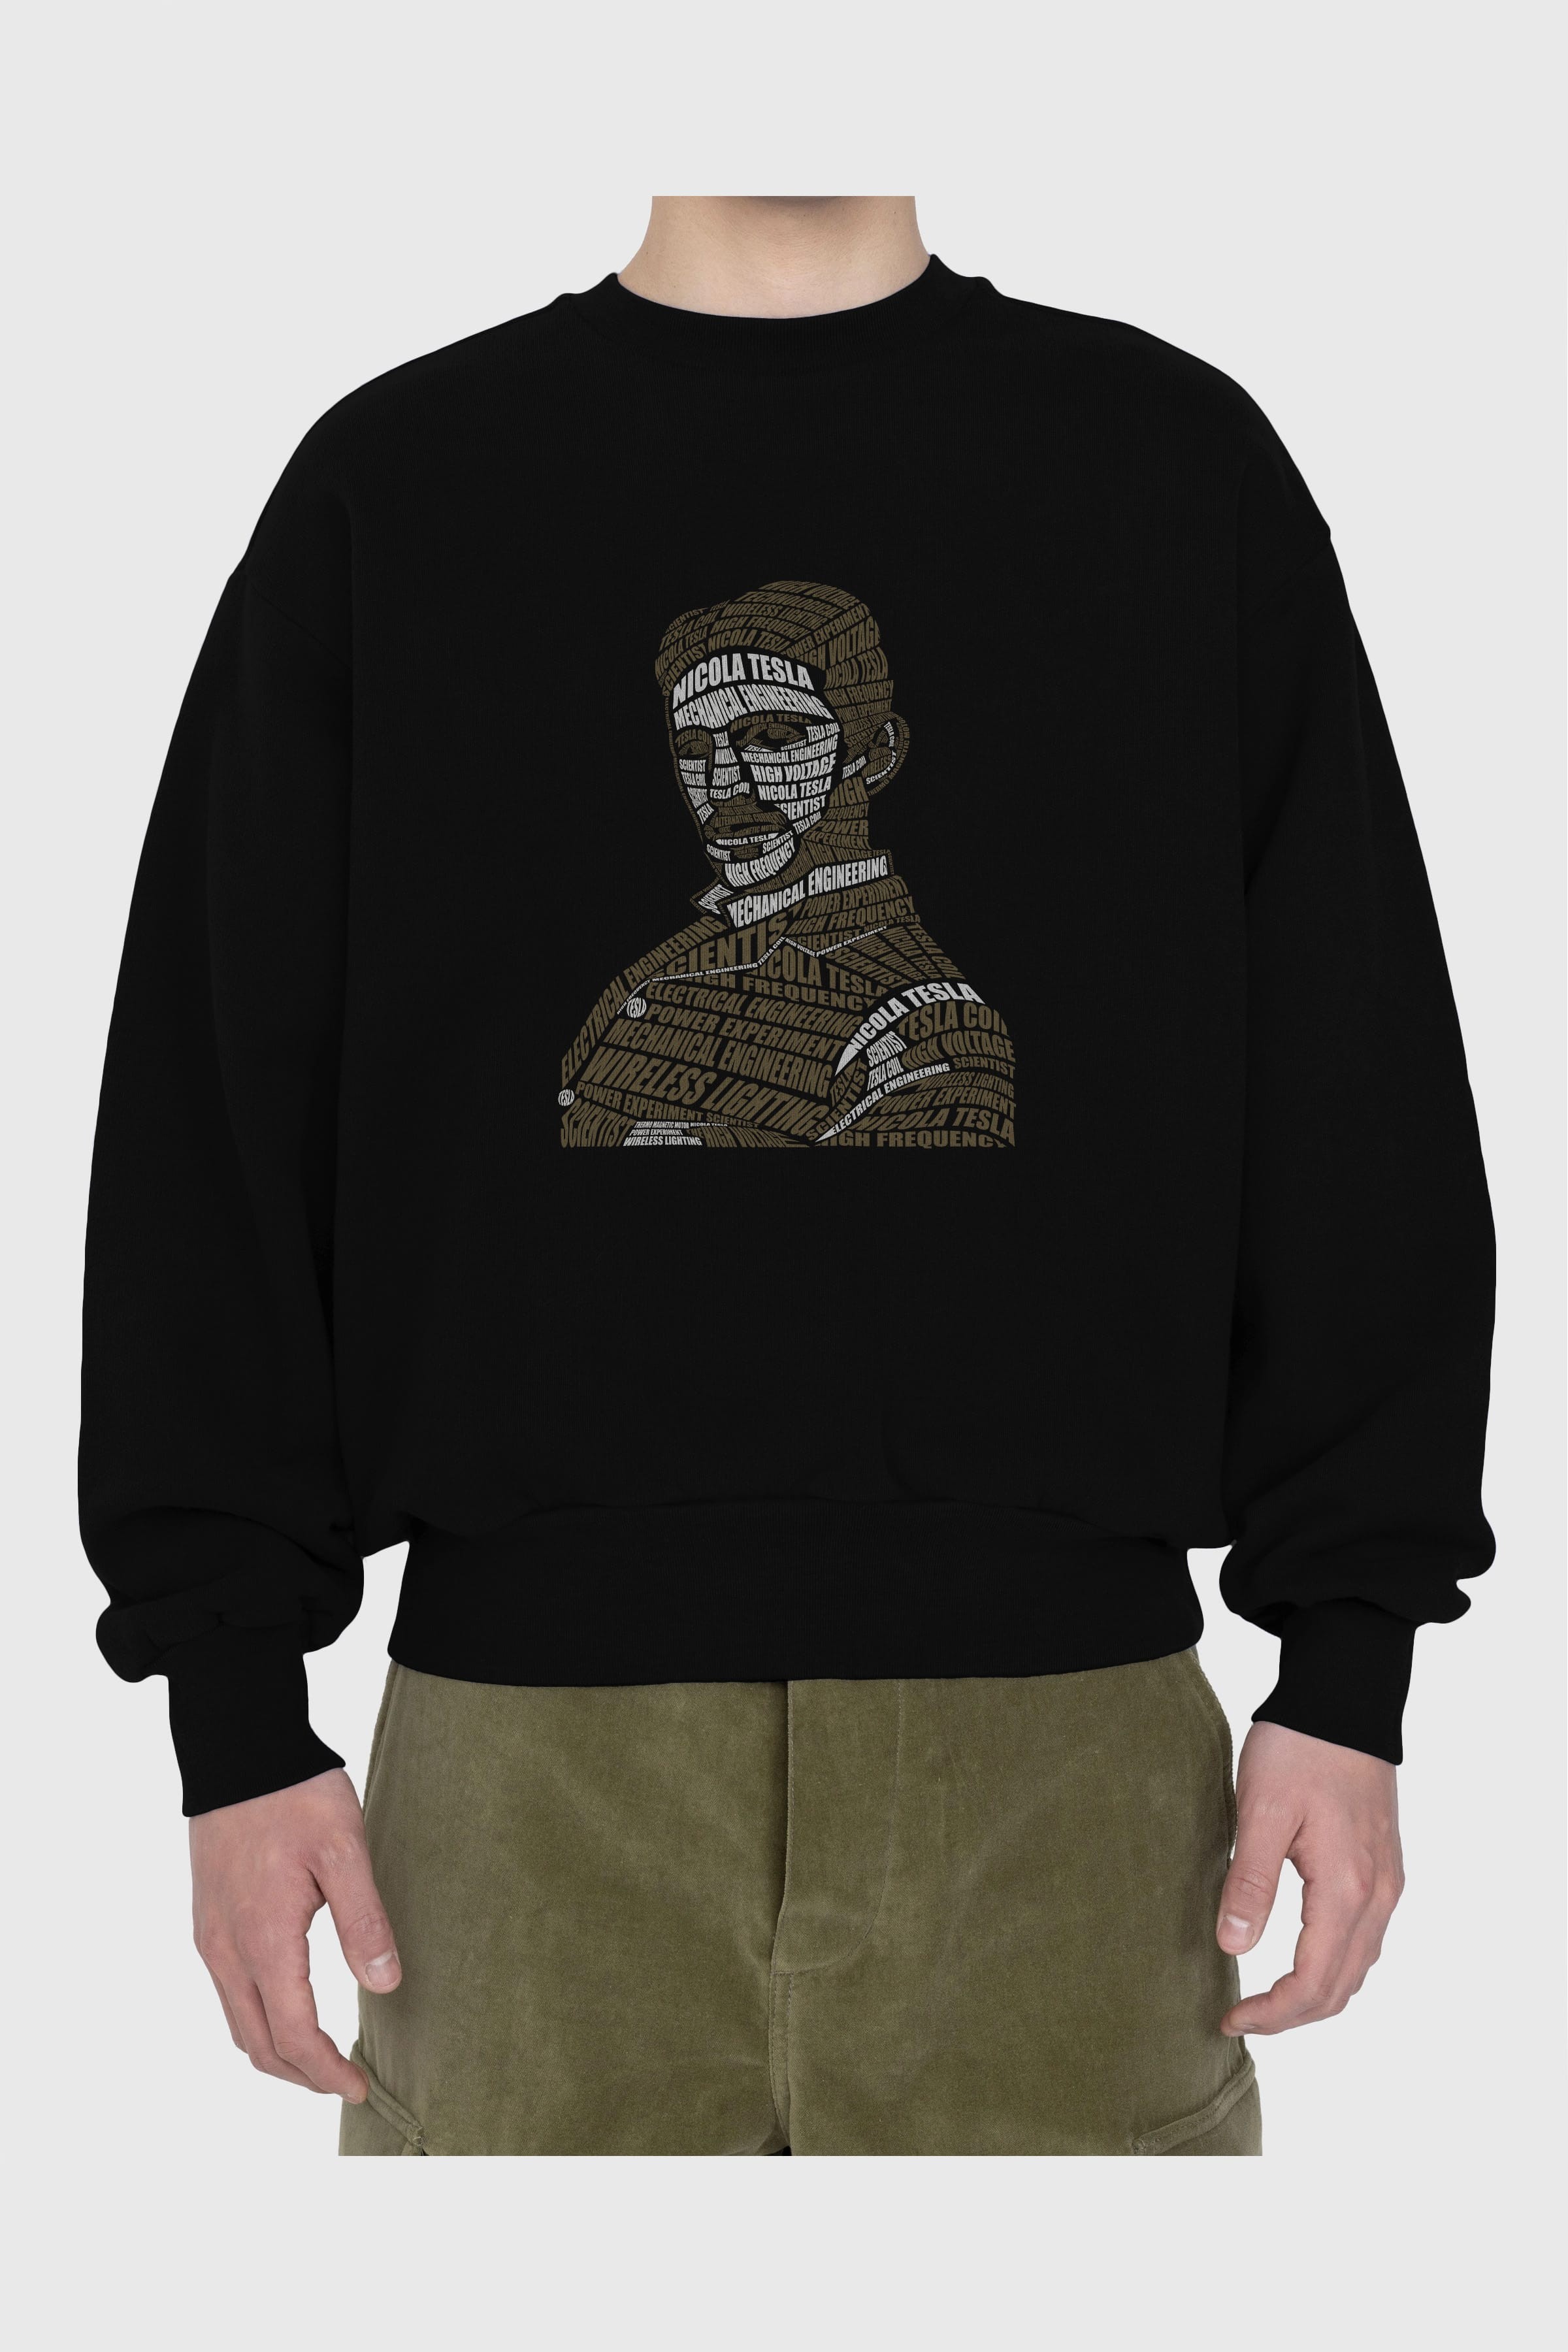 Nikola Tesla Calligram Ön Baskılı Oversize Sweatshirt Erkek Kadın Unisex